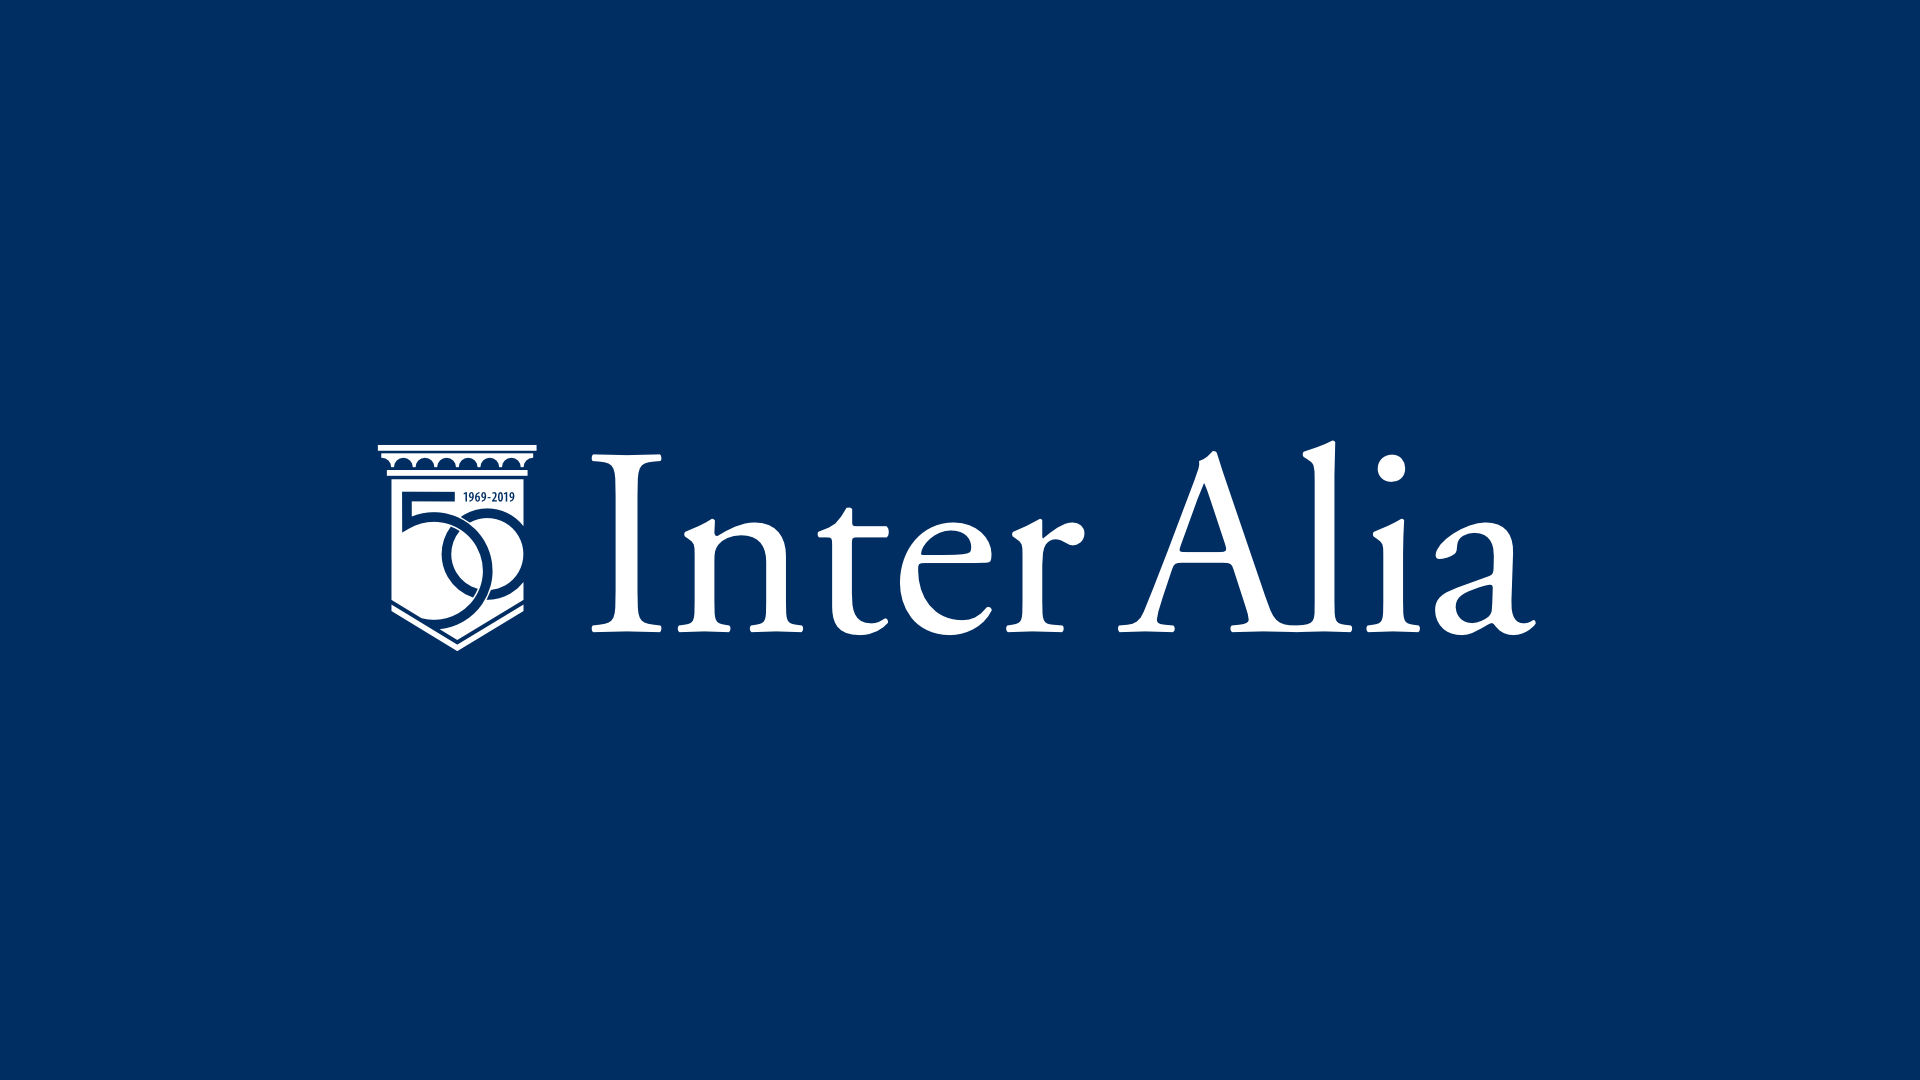 Inter Alia Cover Photo in Color